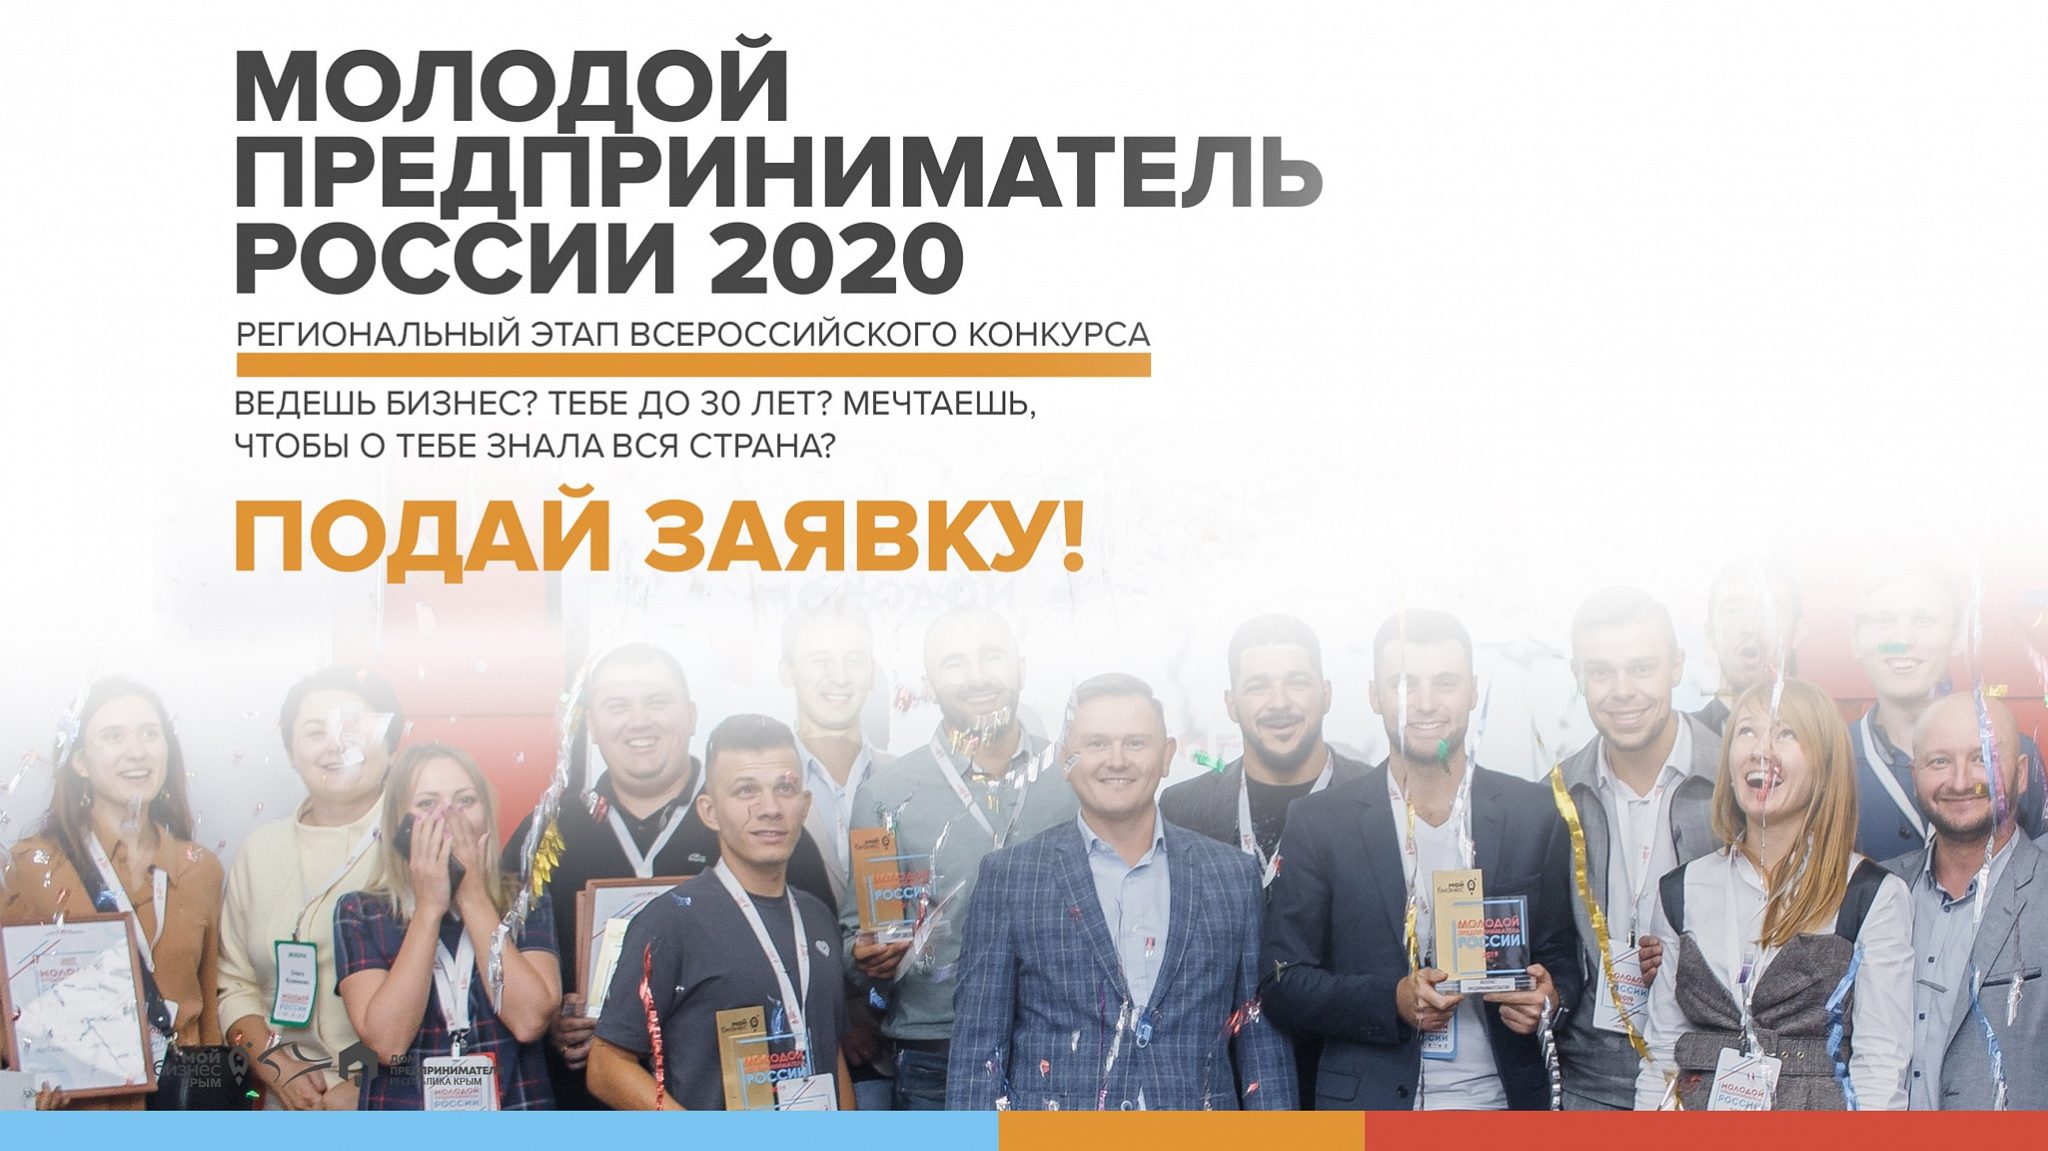 ПРИМИ УЧАСТИЕ В КОНКУРСЕ «МОЛОДОЙ ПРЕДПРИНИМАТЕЛЬ РОССИИ 2020»